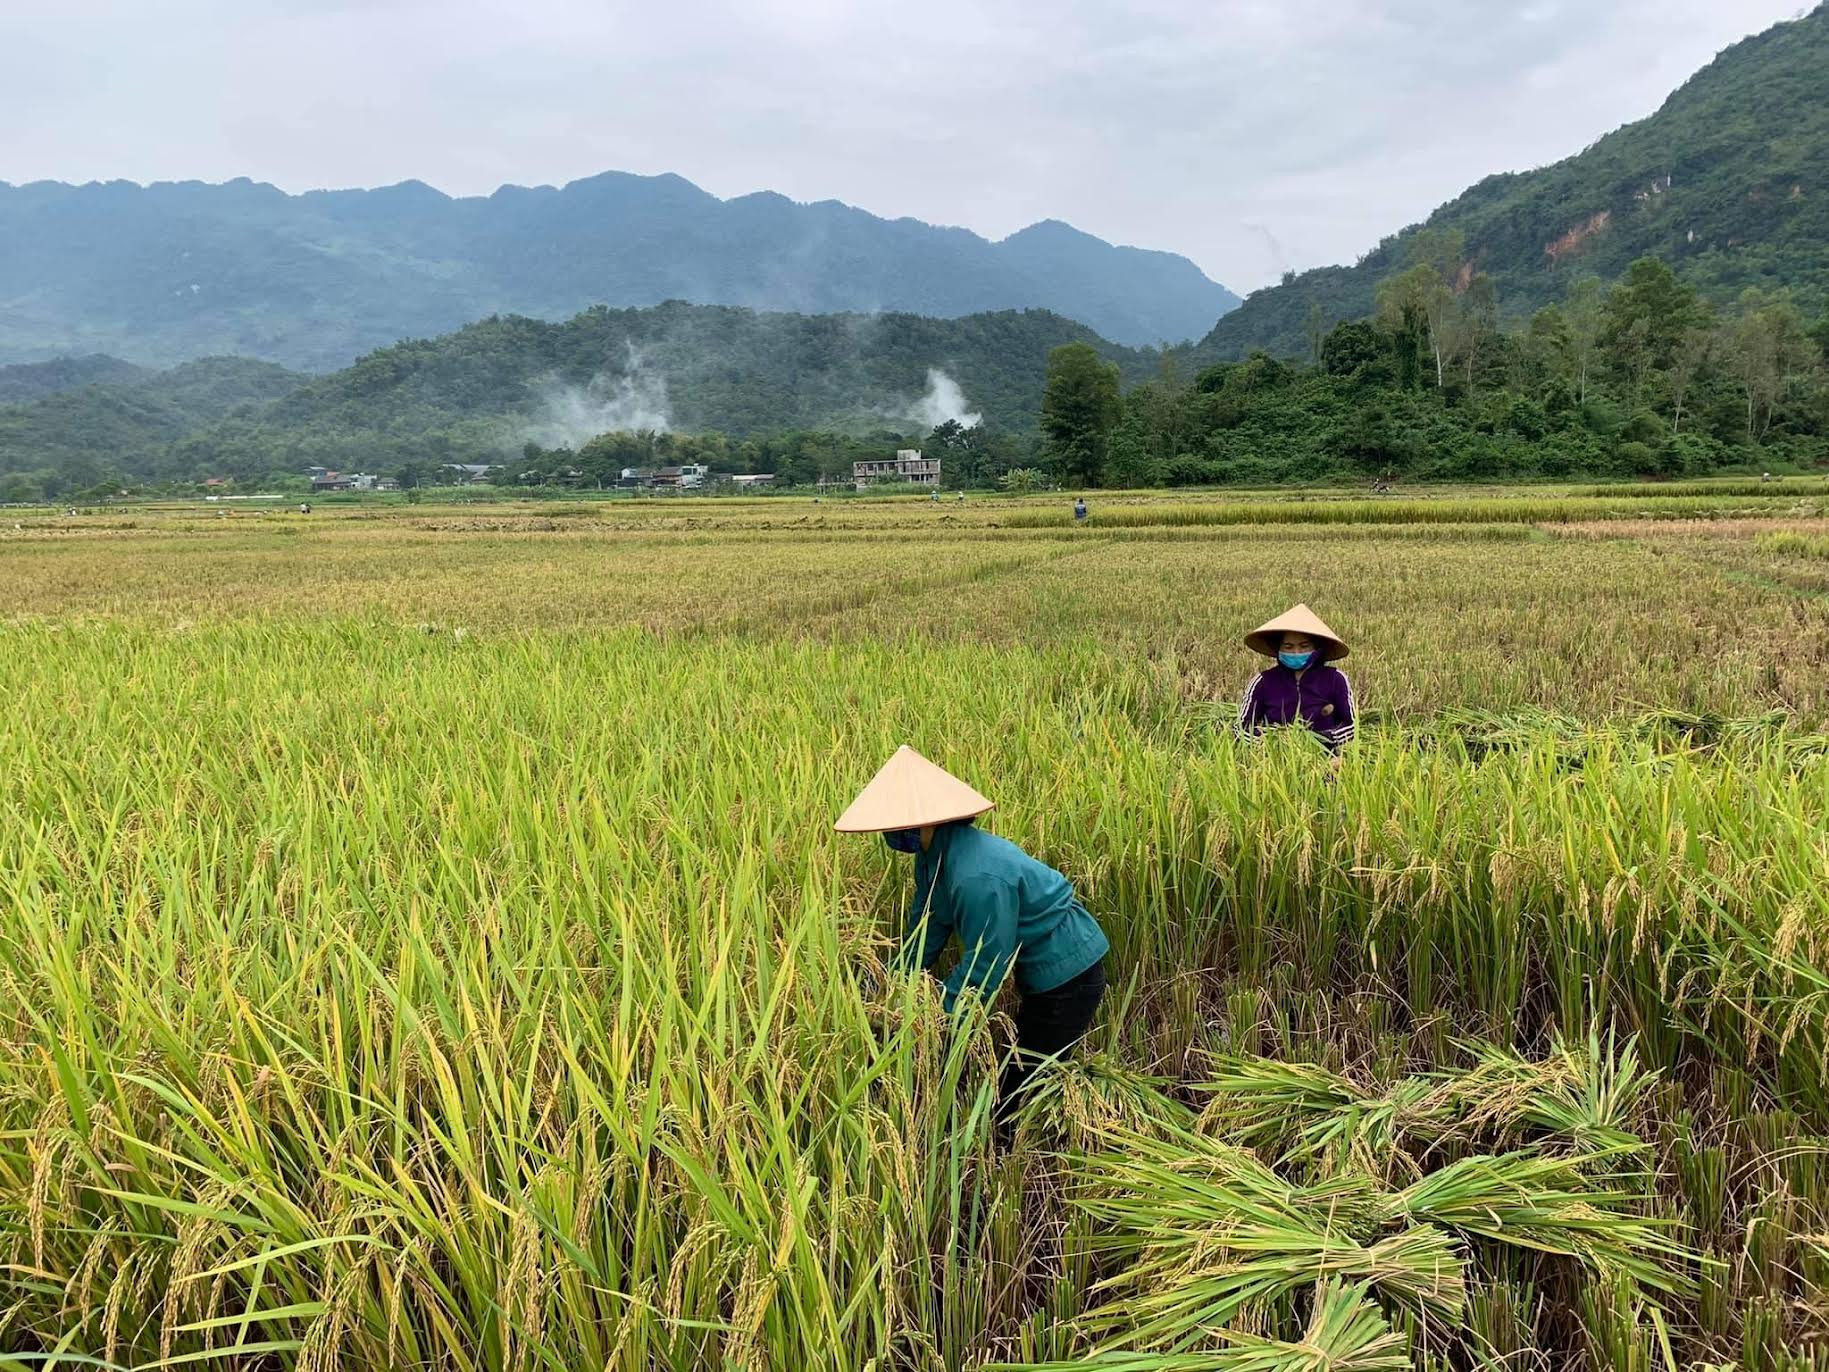 Sản xuất lúa theo hướng hữu cơ  Hướng đi bền vững